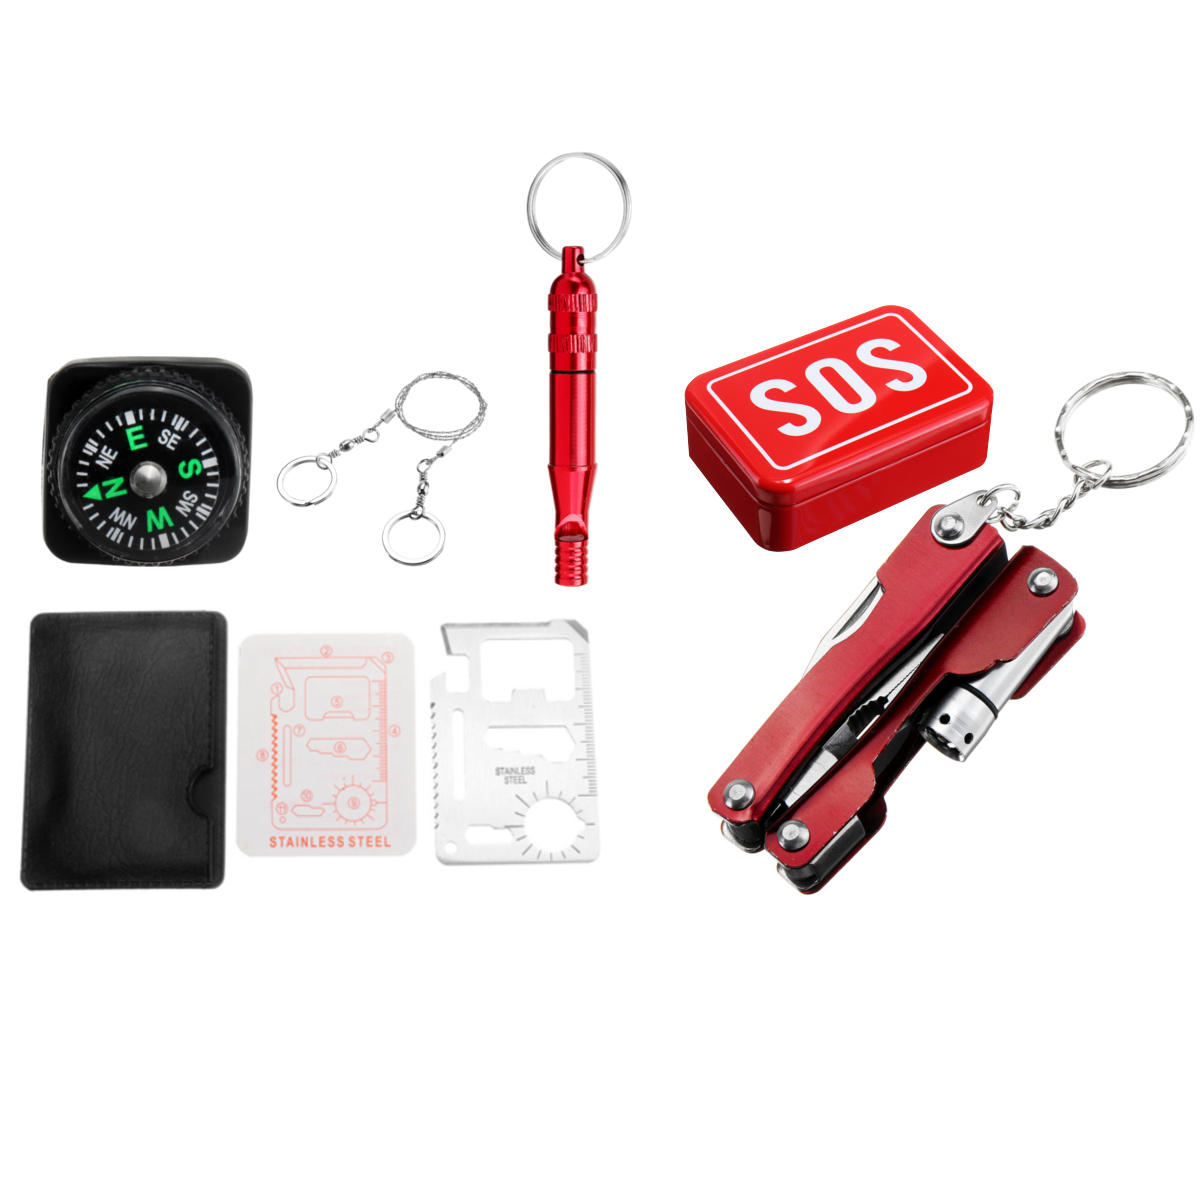 Kit d'outils de survie d'urgence SOS en plein air pour bureau à domicile voiture bateau Camping randonnée voyage ou aventures 216/45/39/6 pièces